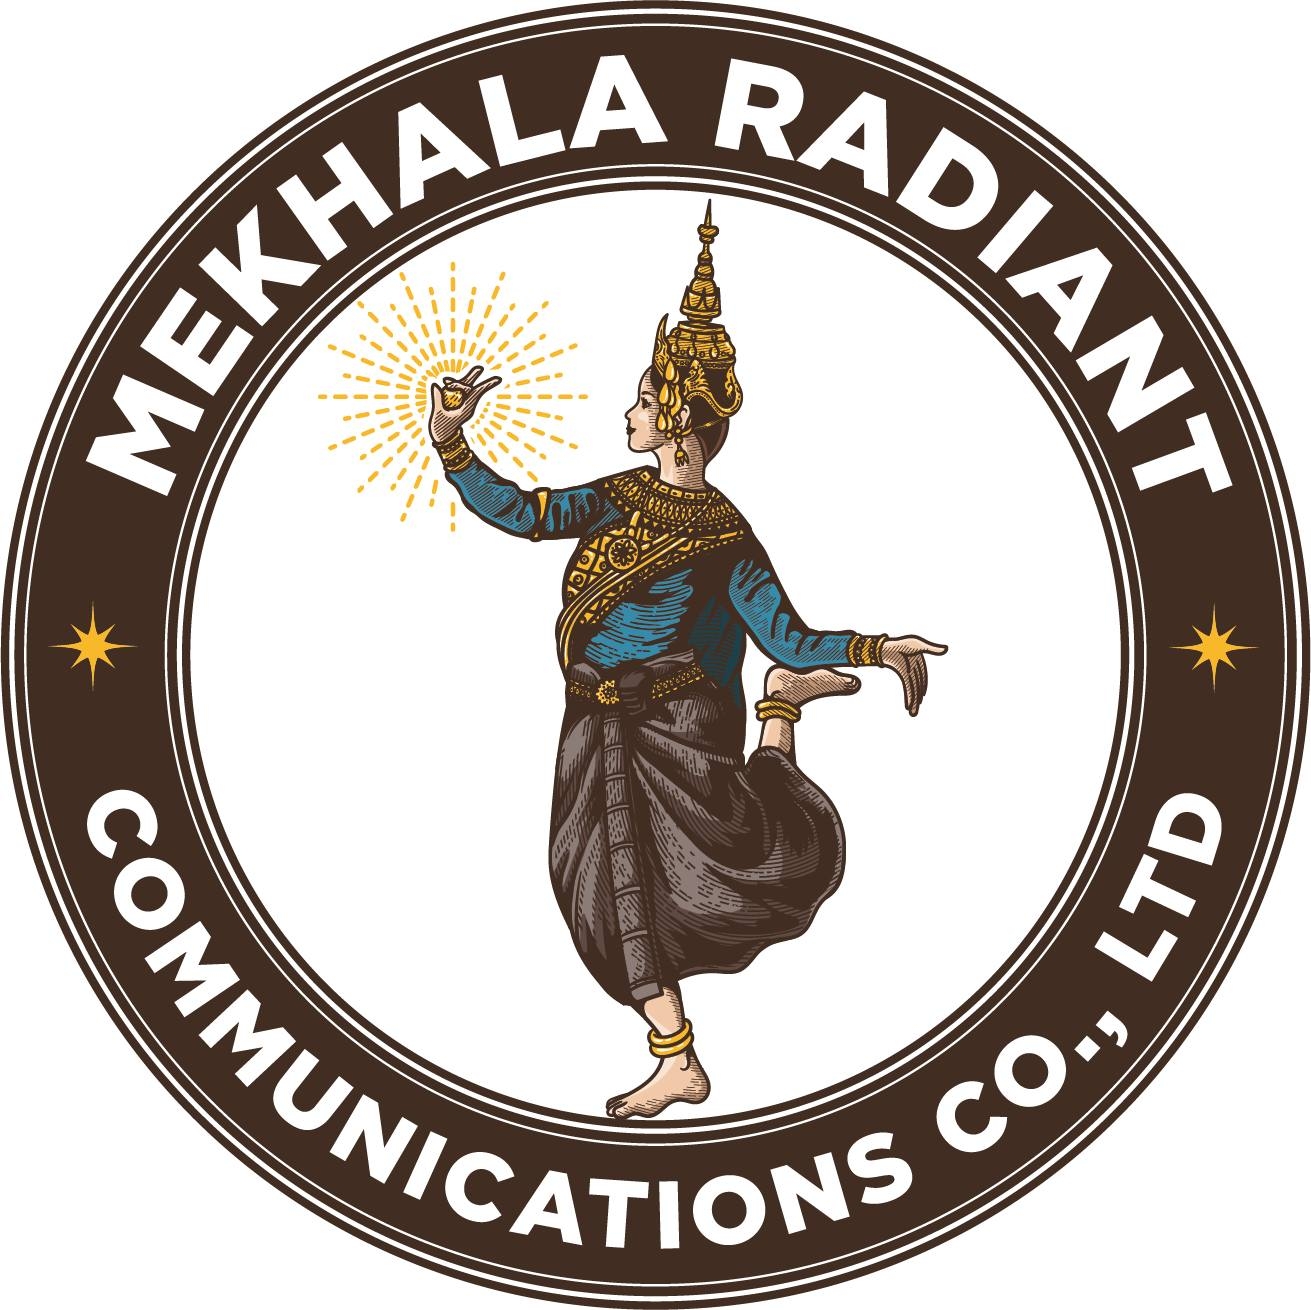 Mekhala Radiant Communications